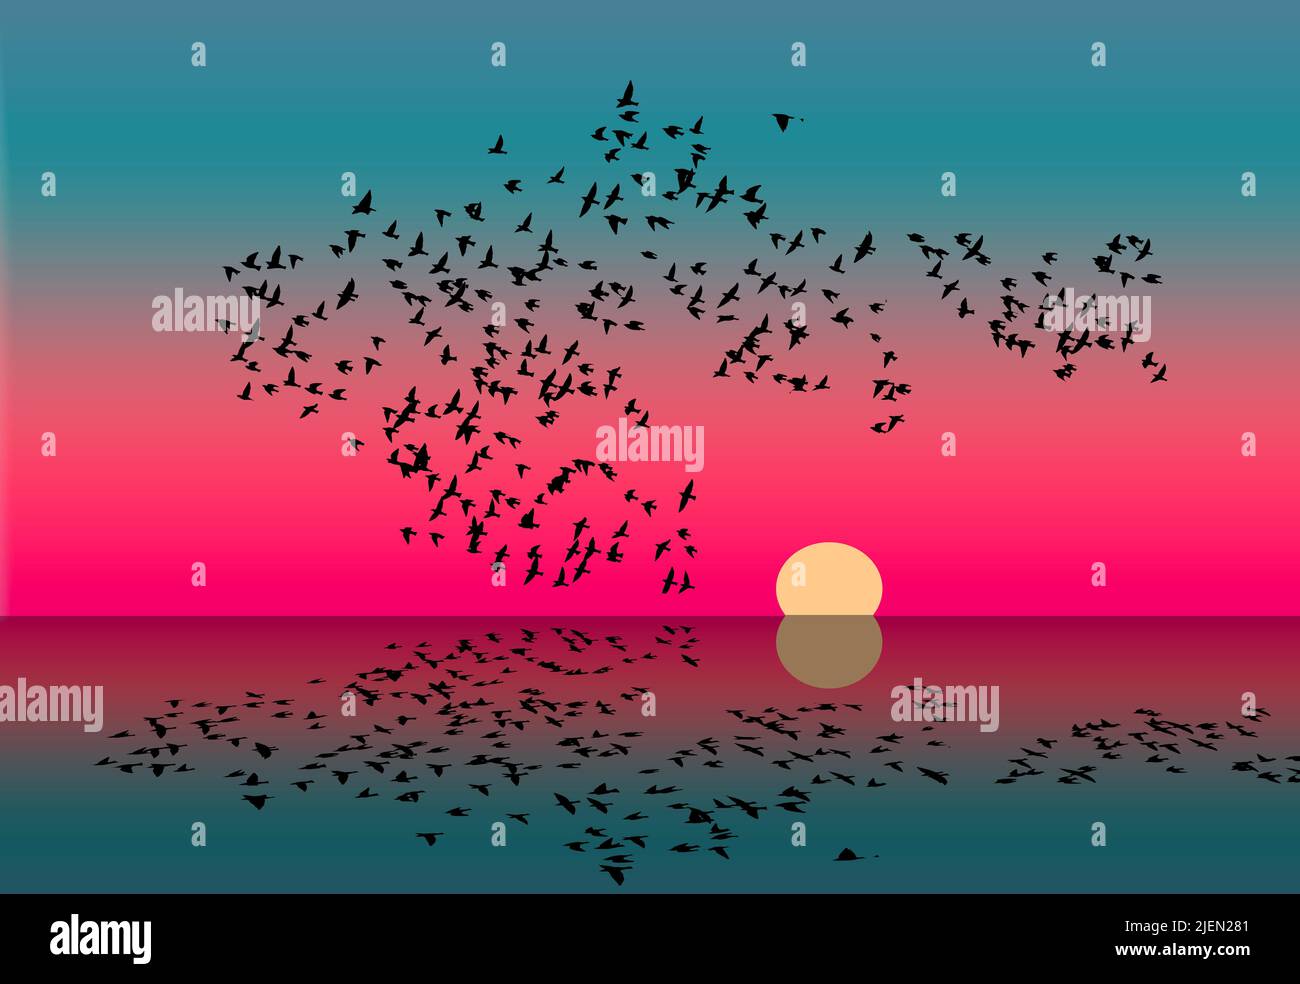 Una bandada de aves al atardecer se refleja en el agua de un lago en esta ilustración de 3. Foto de stock